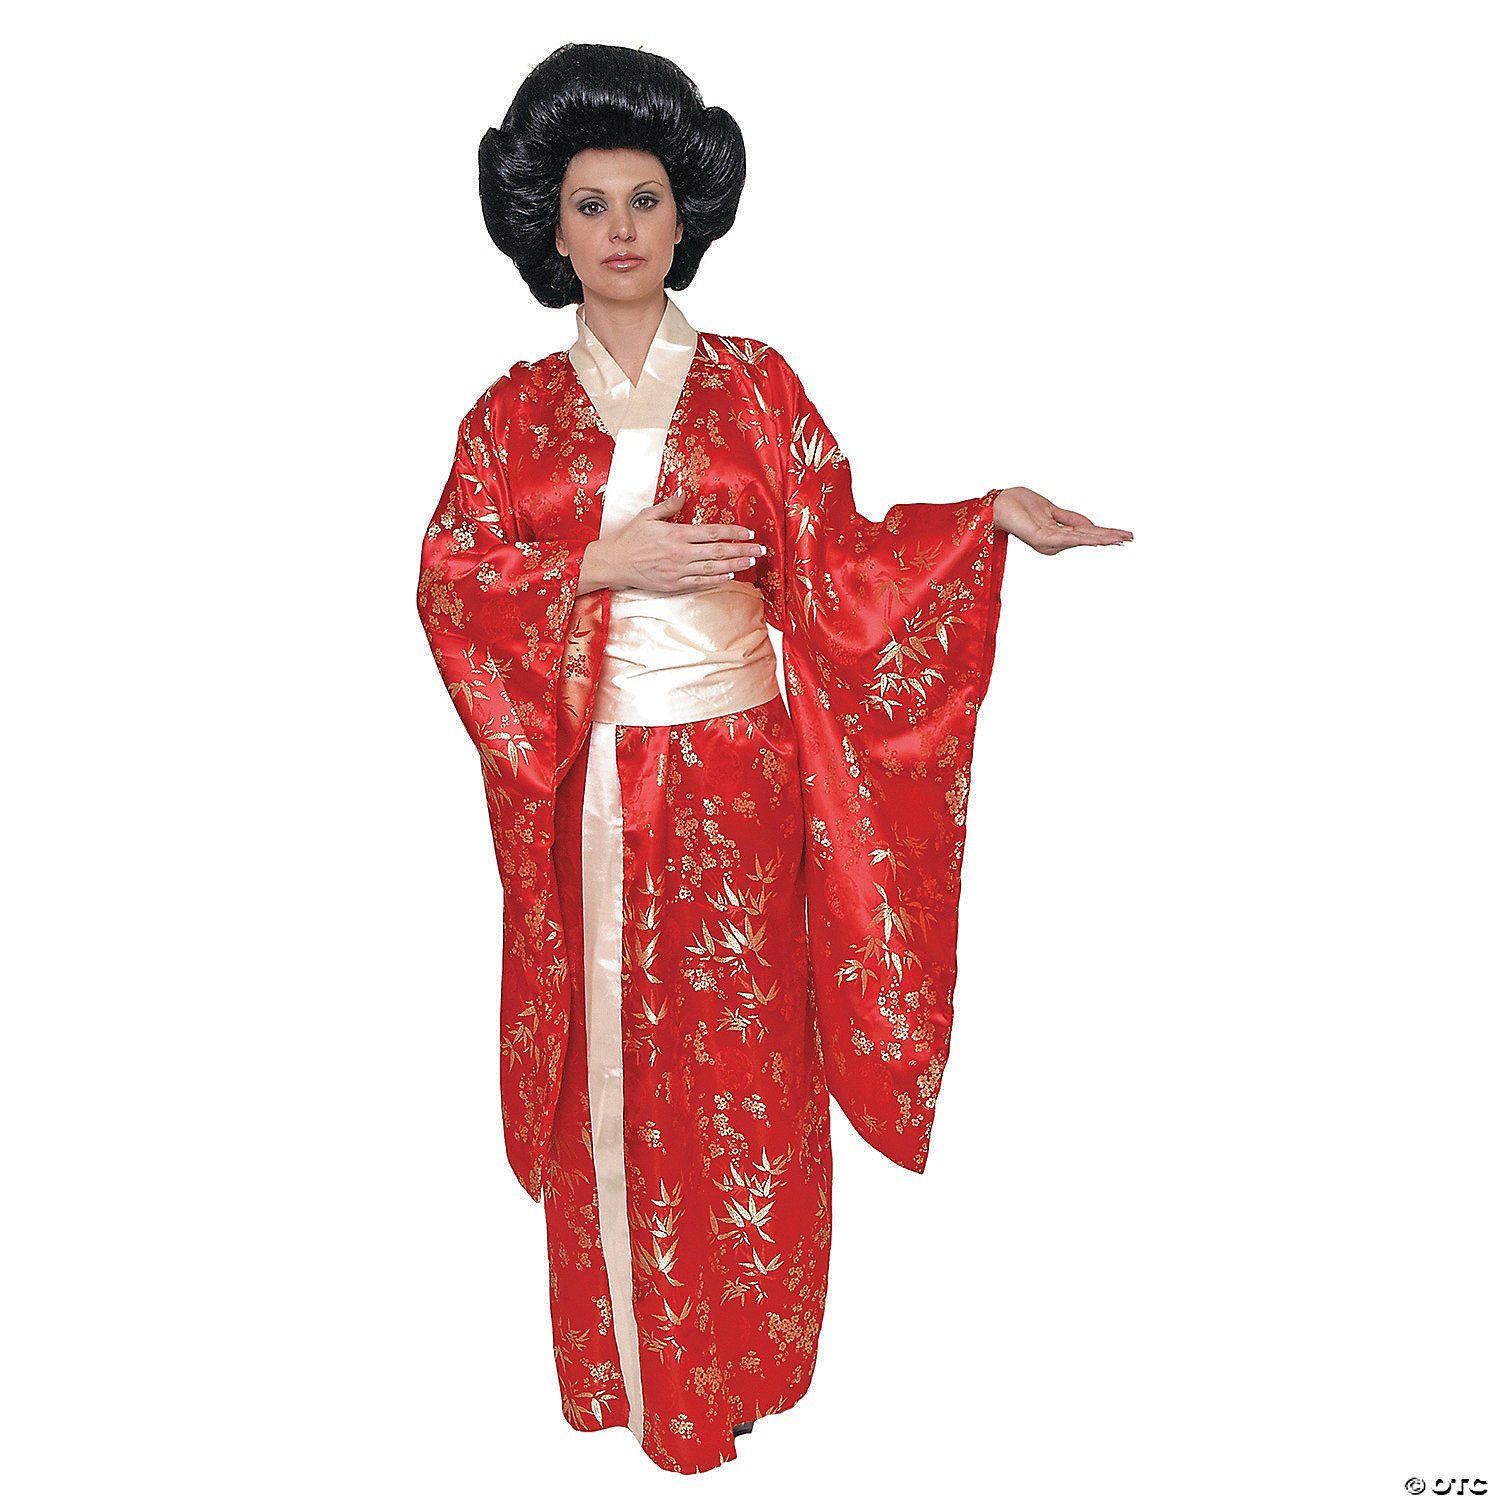 red kimono outfit